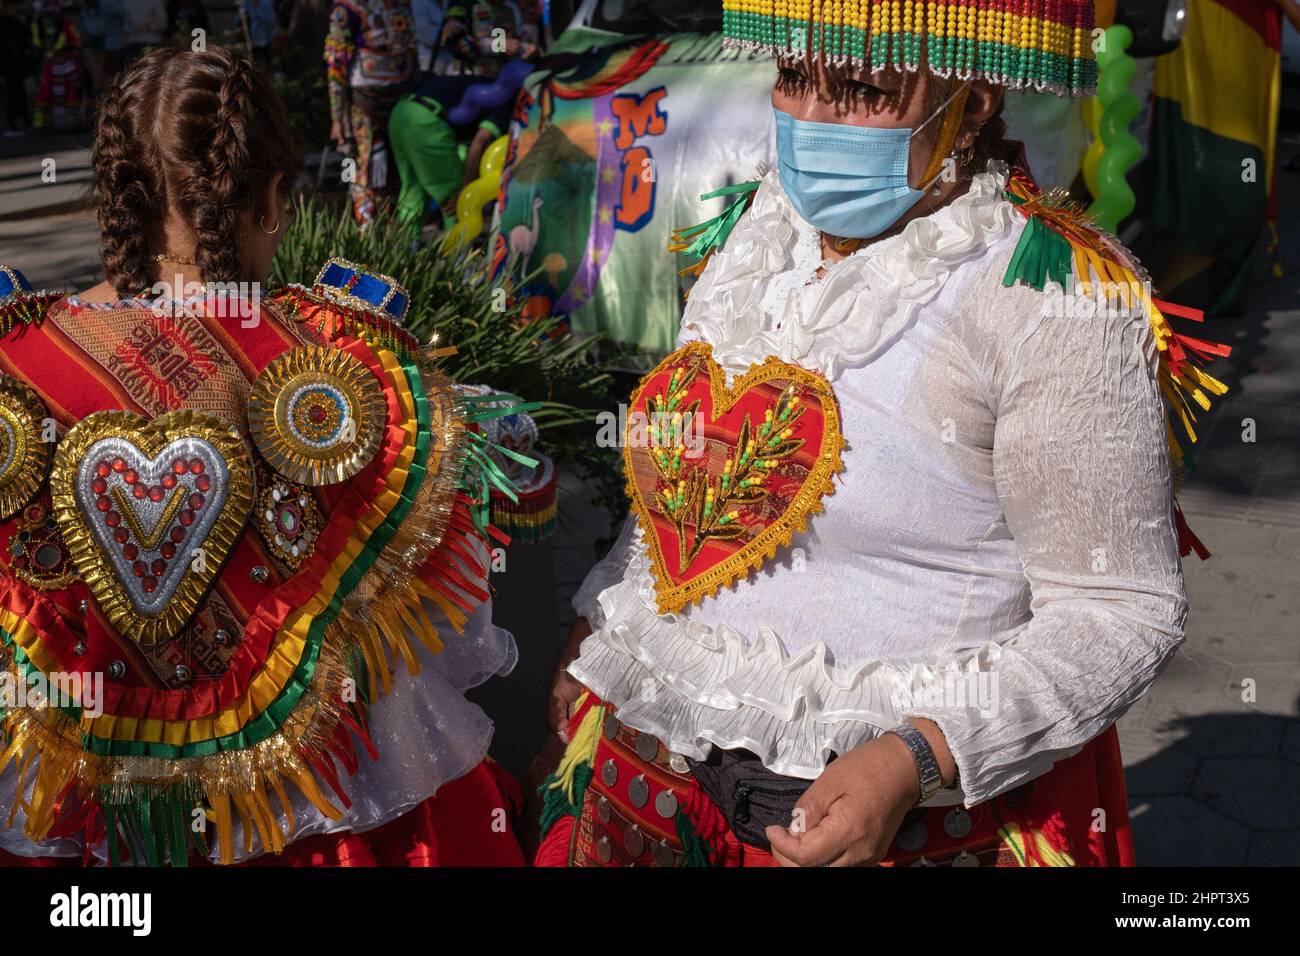 Femmes boliviennes portant des robes traditionnelles colorées avec des coeurs pendant Dia de la Hispanidad (jour hispanique) à Gracia Avenue à Barcelone, Espagne. Banque D'Images